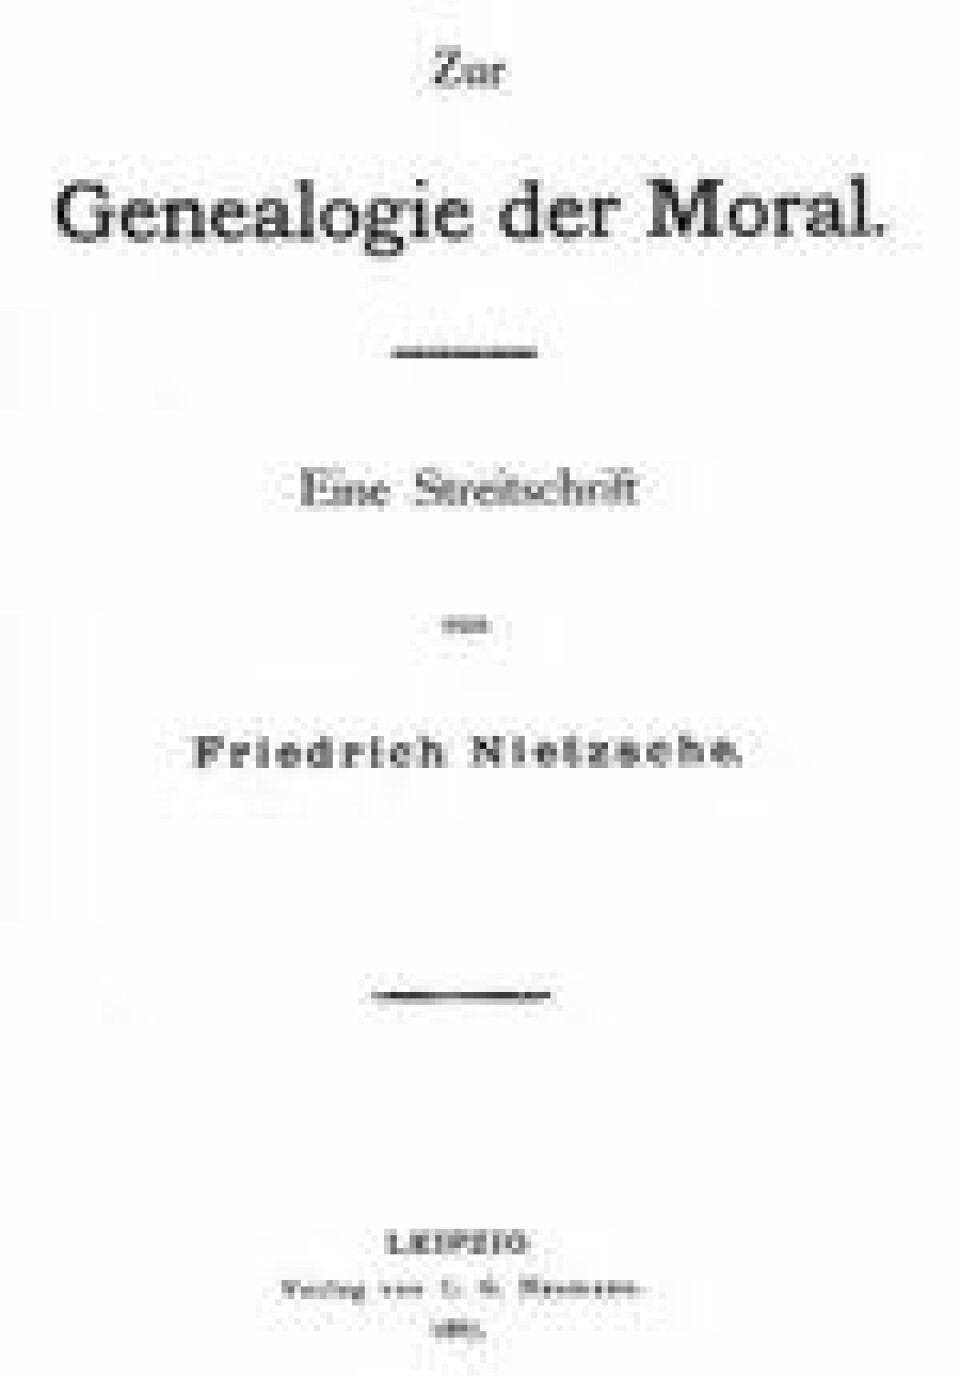 Moralens genealogi ble trykket på forfatterens bekostning og utkom via Naumann i Leipzig i 600 eksemplarer, november 1887. (Kilde: Wikimedia Commons)